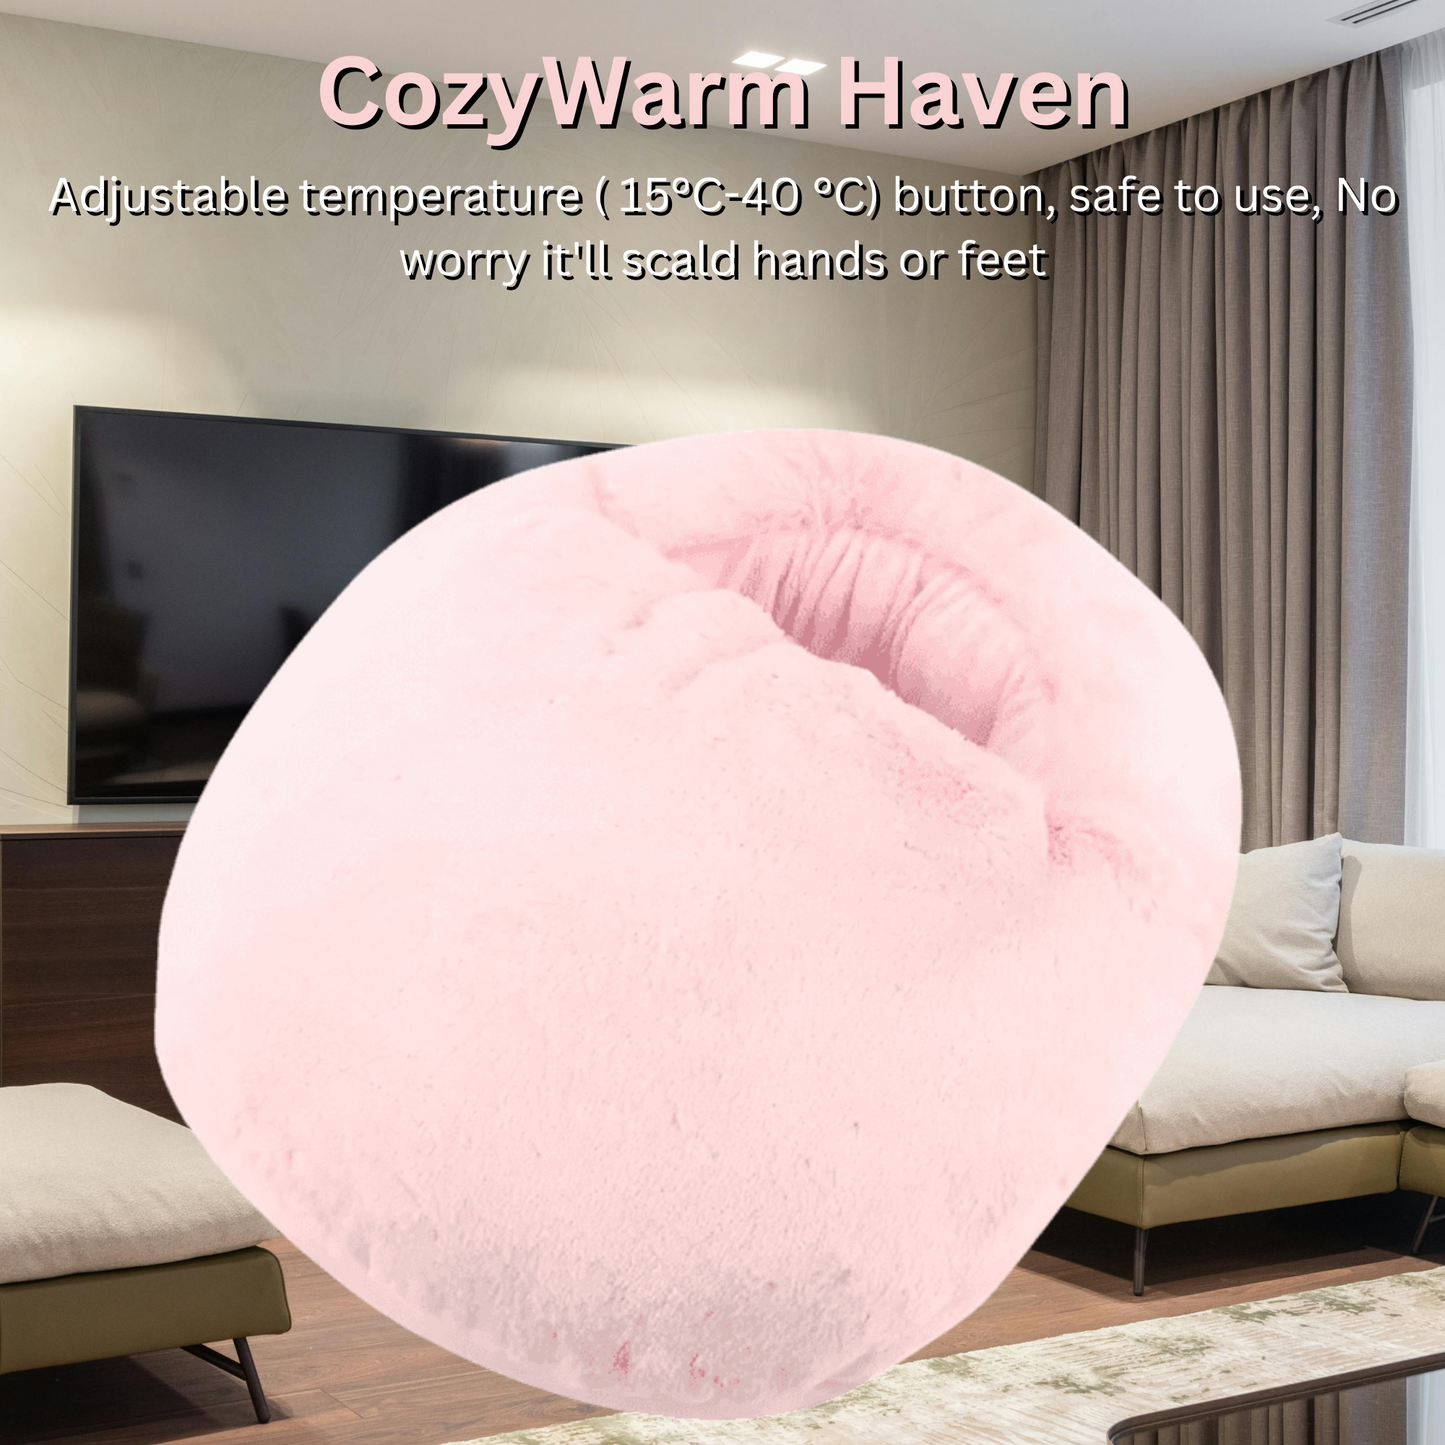 CozyWarm Haven